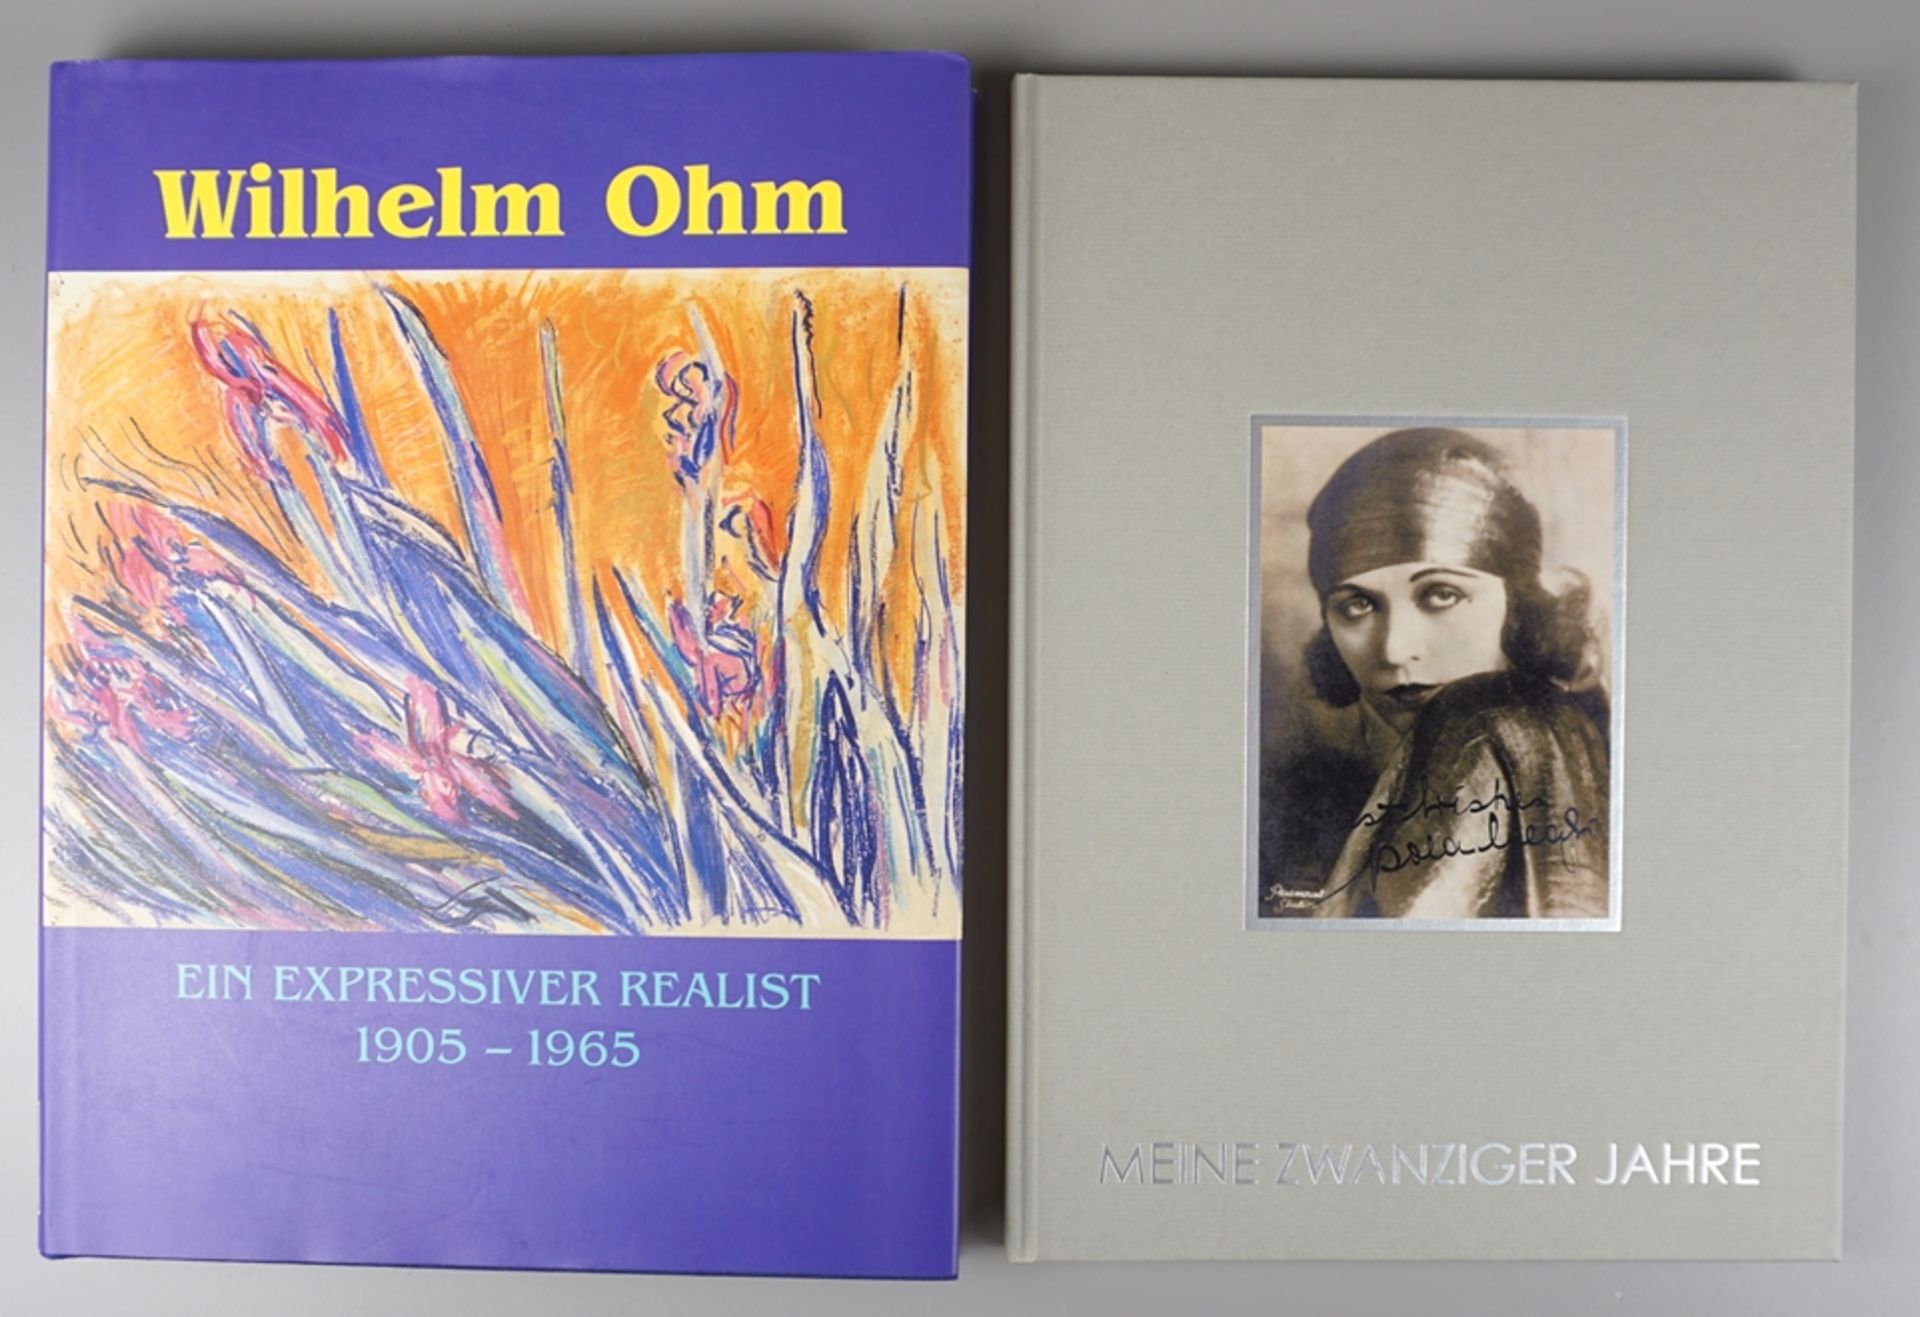 Katalog "Meine zwanziger Jahre" und Werksverzeichnis von Wilhelm Ohm 